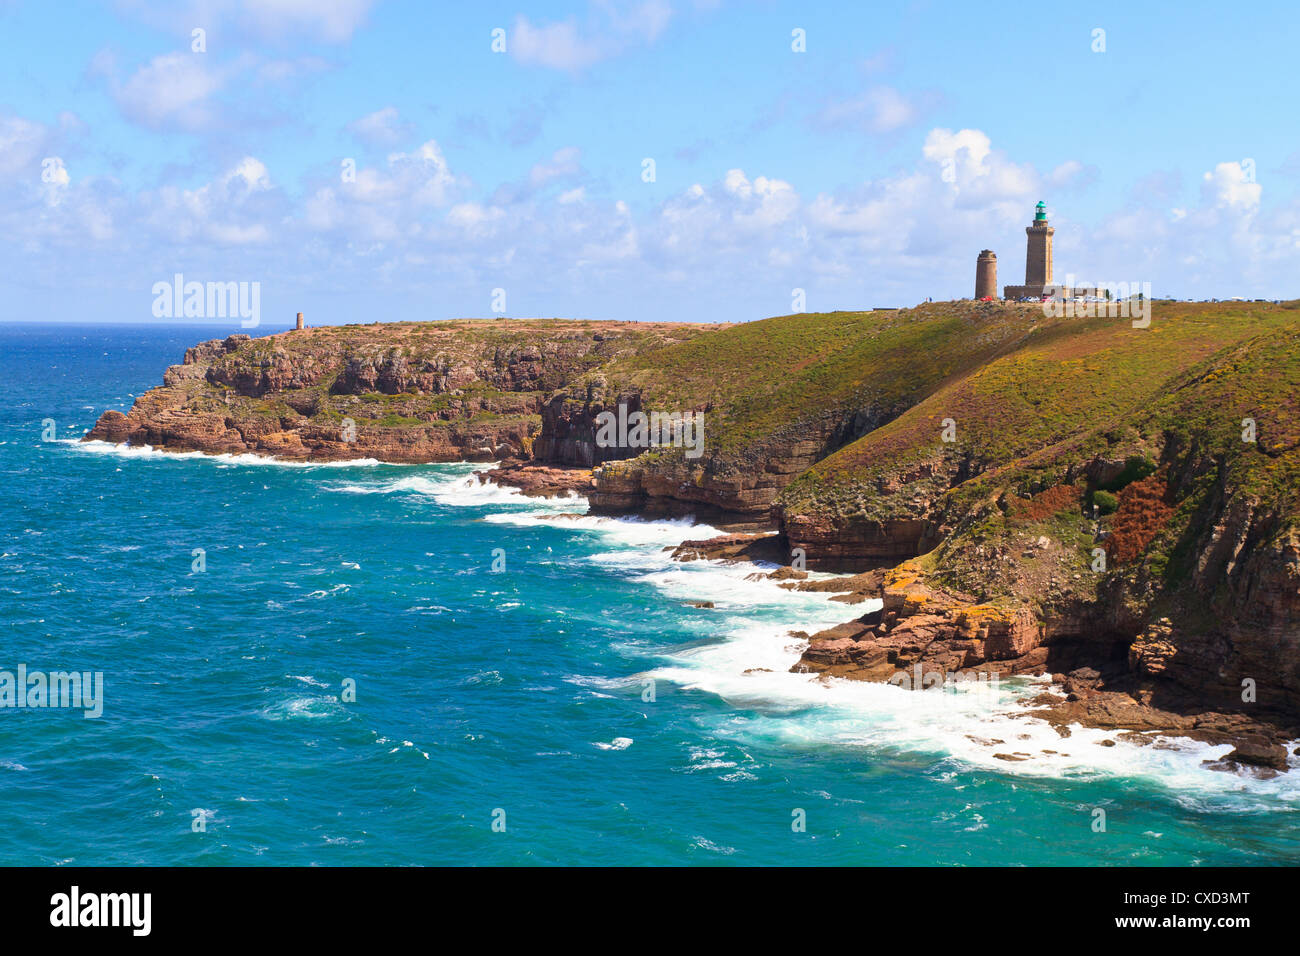 French atlantic coast near Cap Frehel, Brittany, France Stock Photo